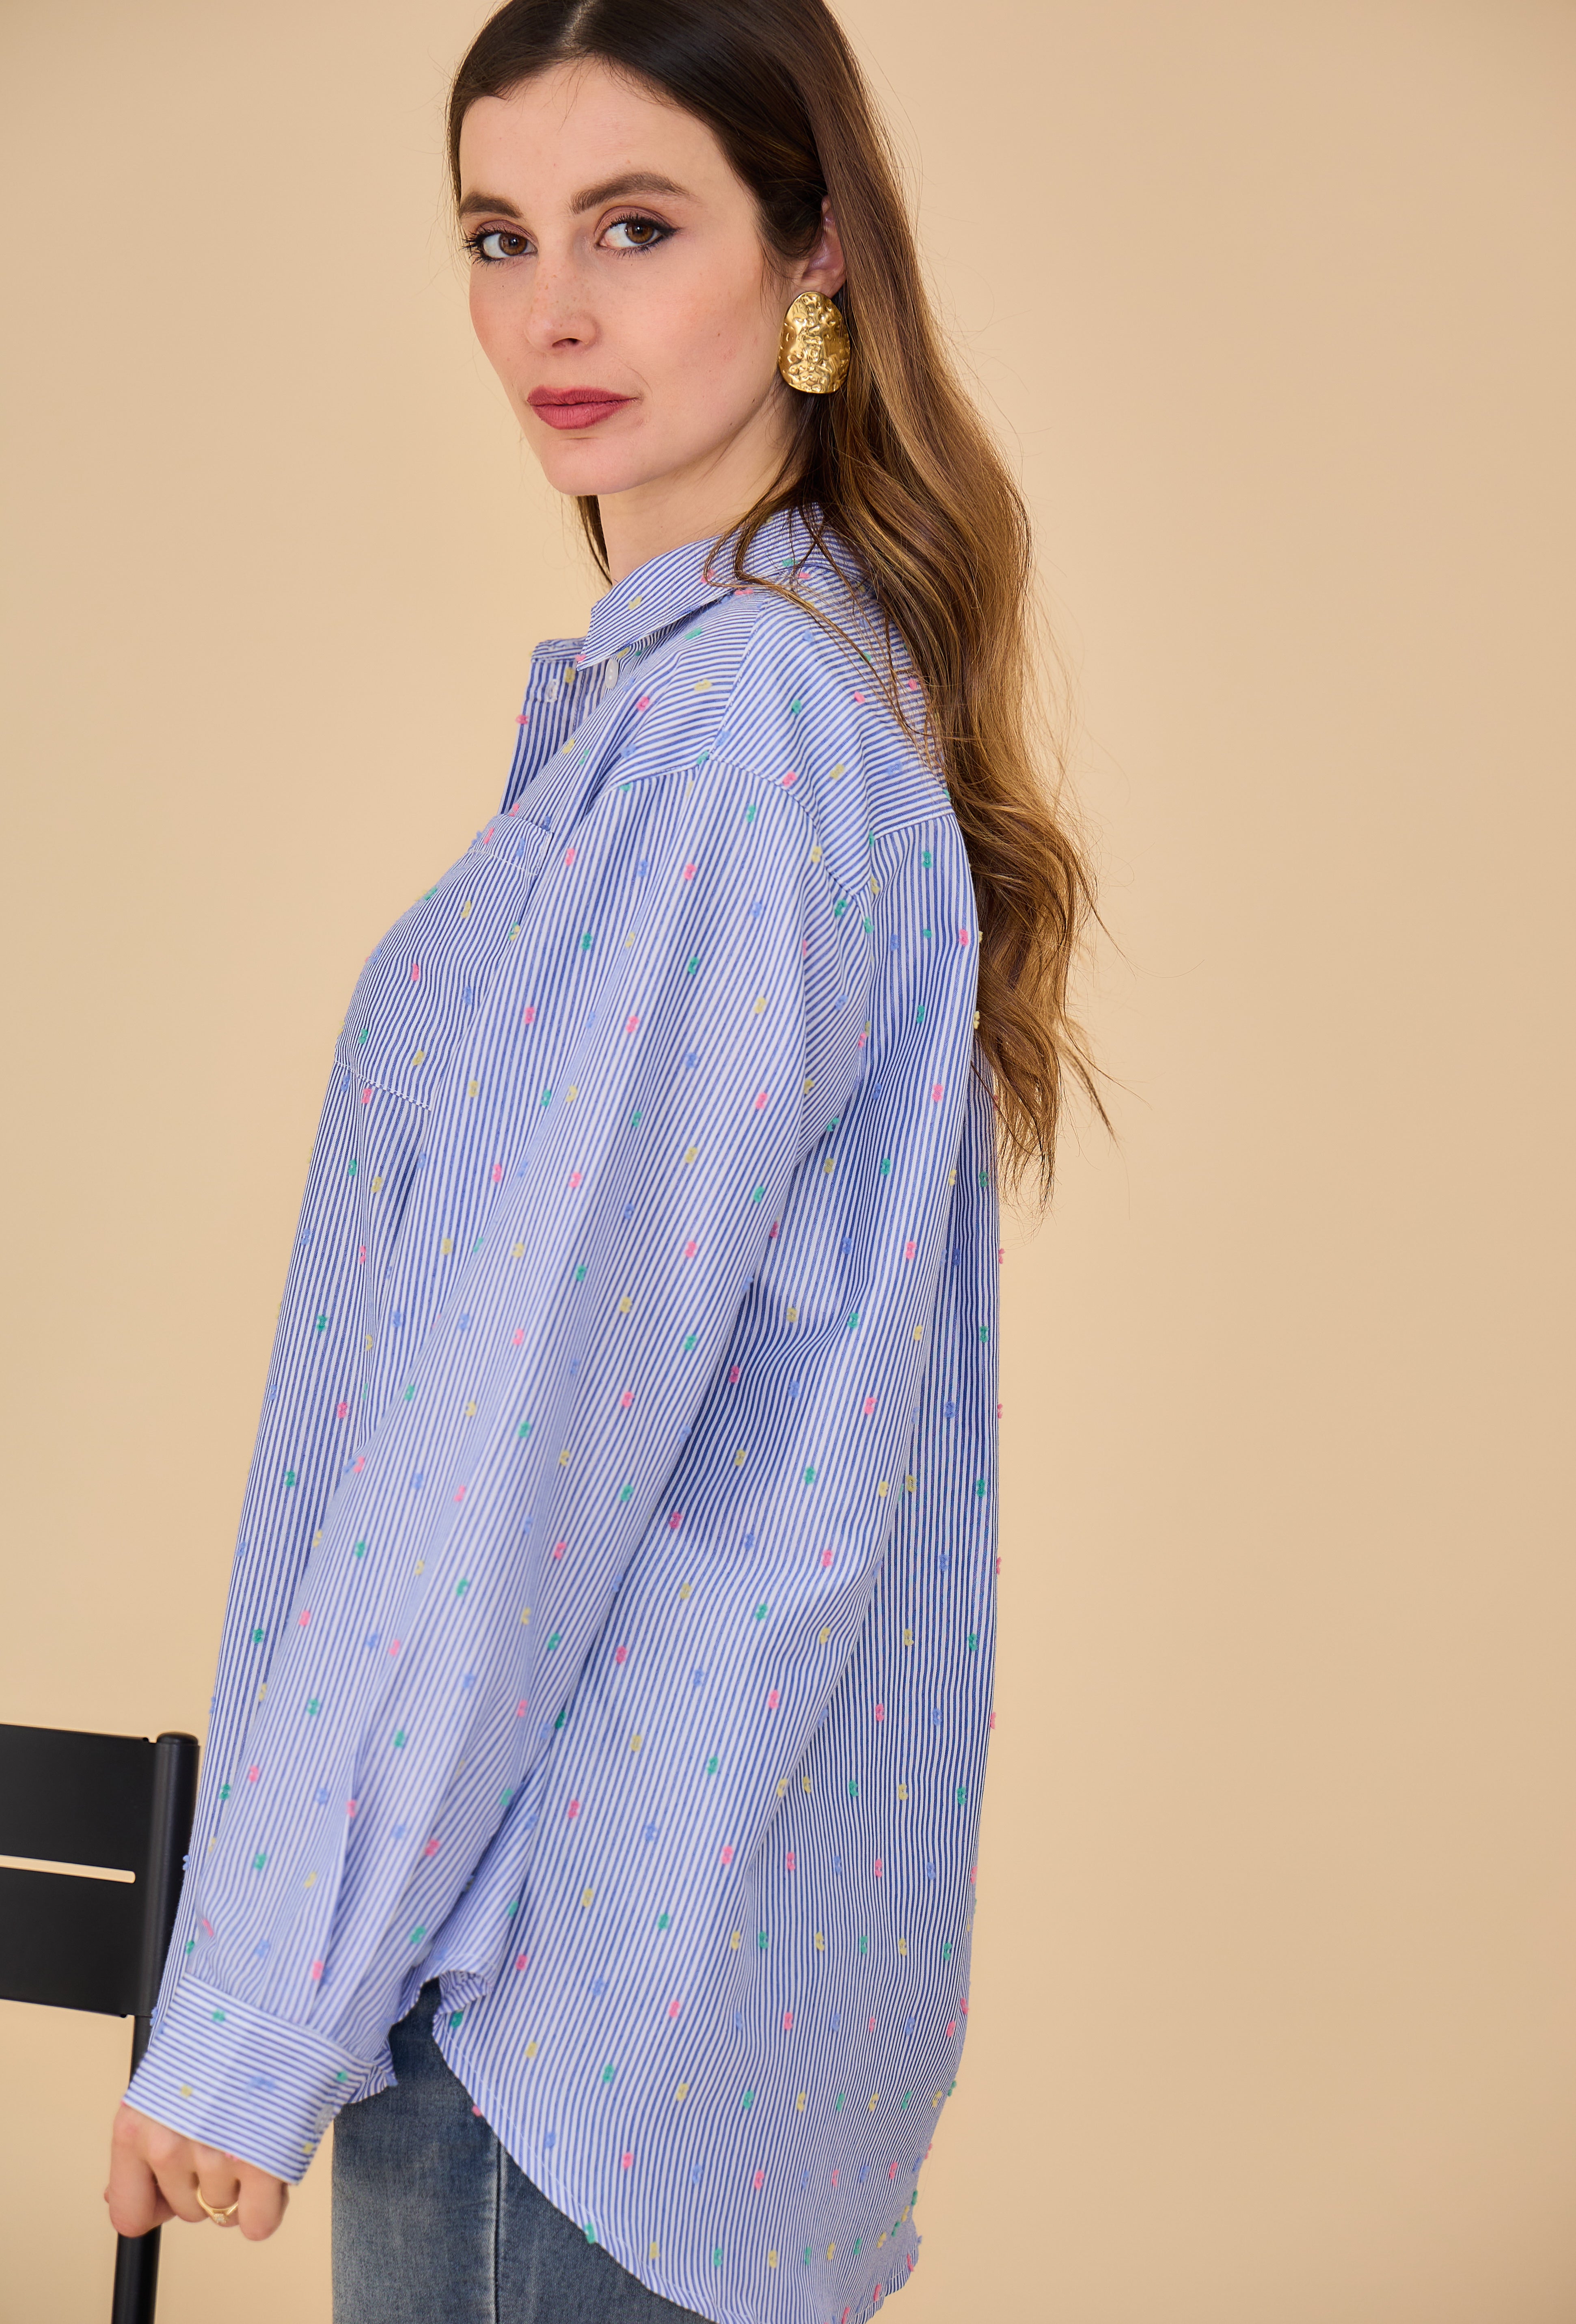 chemise bleue rayée à plumetis multicolores, côté, bas arrondi et dos plus long